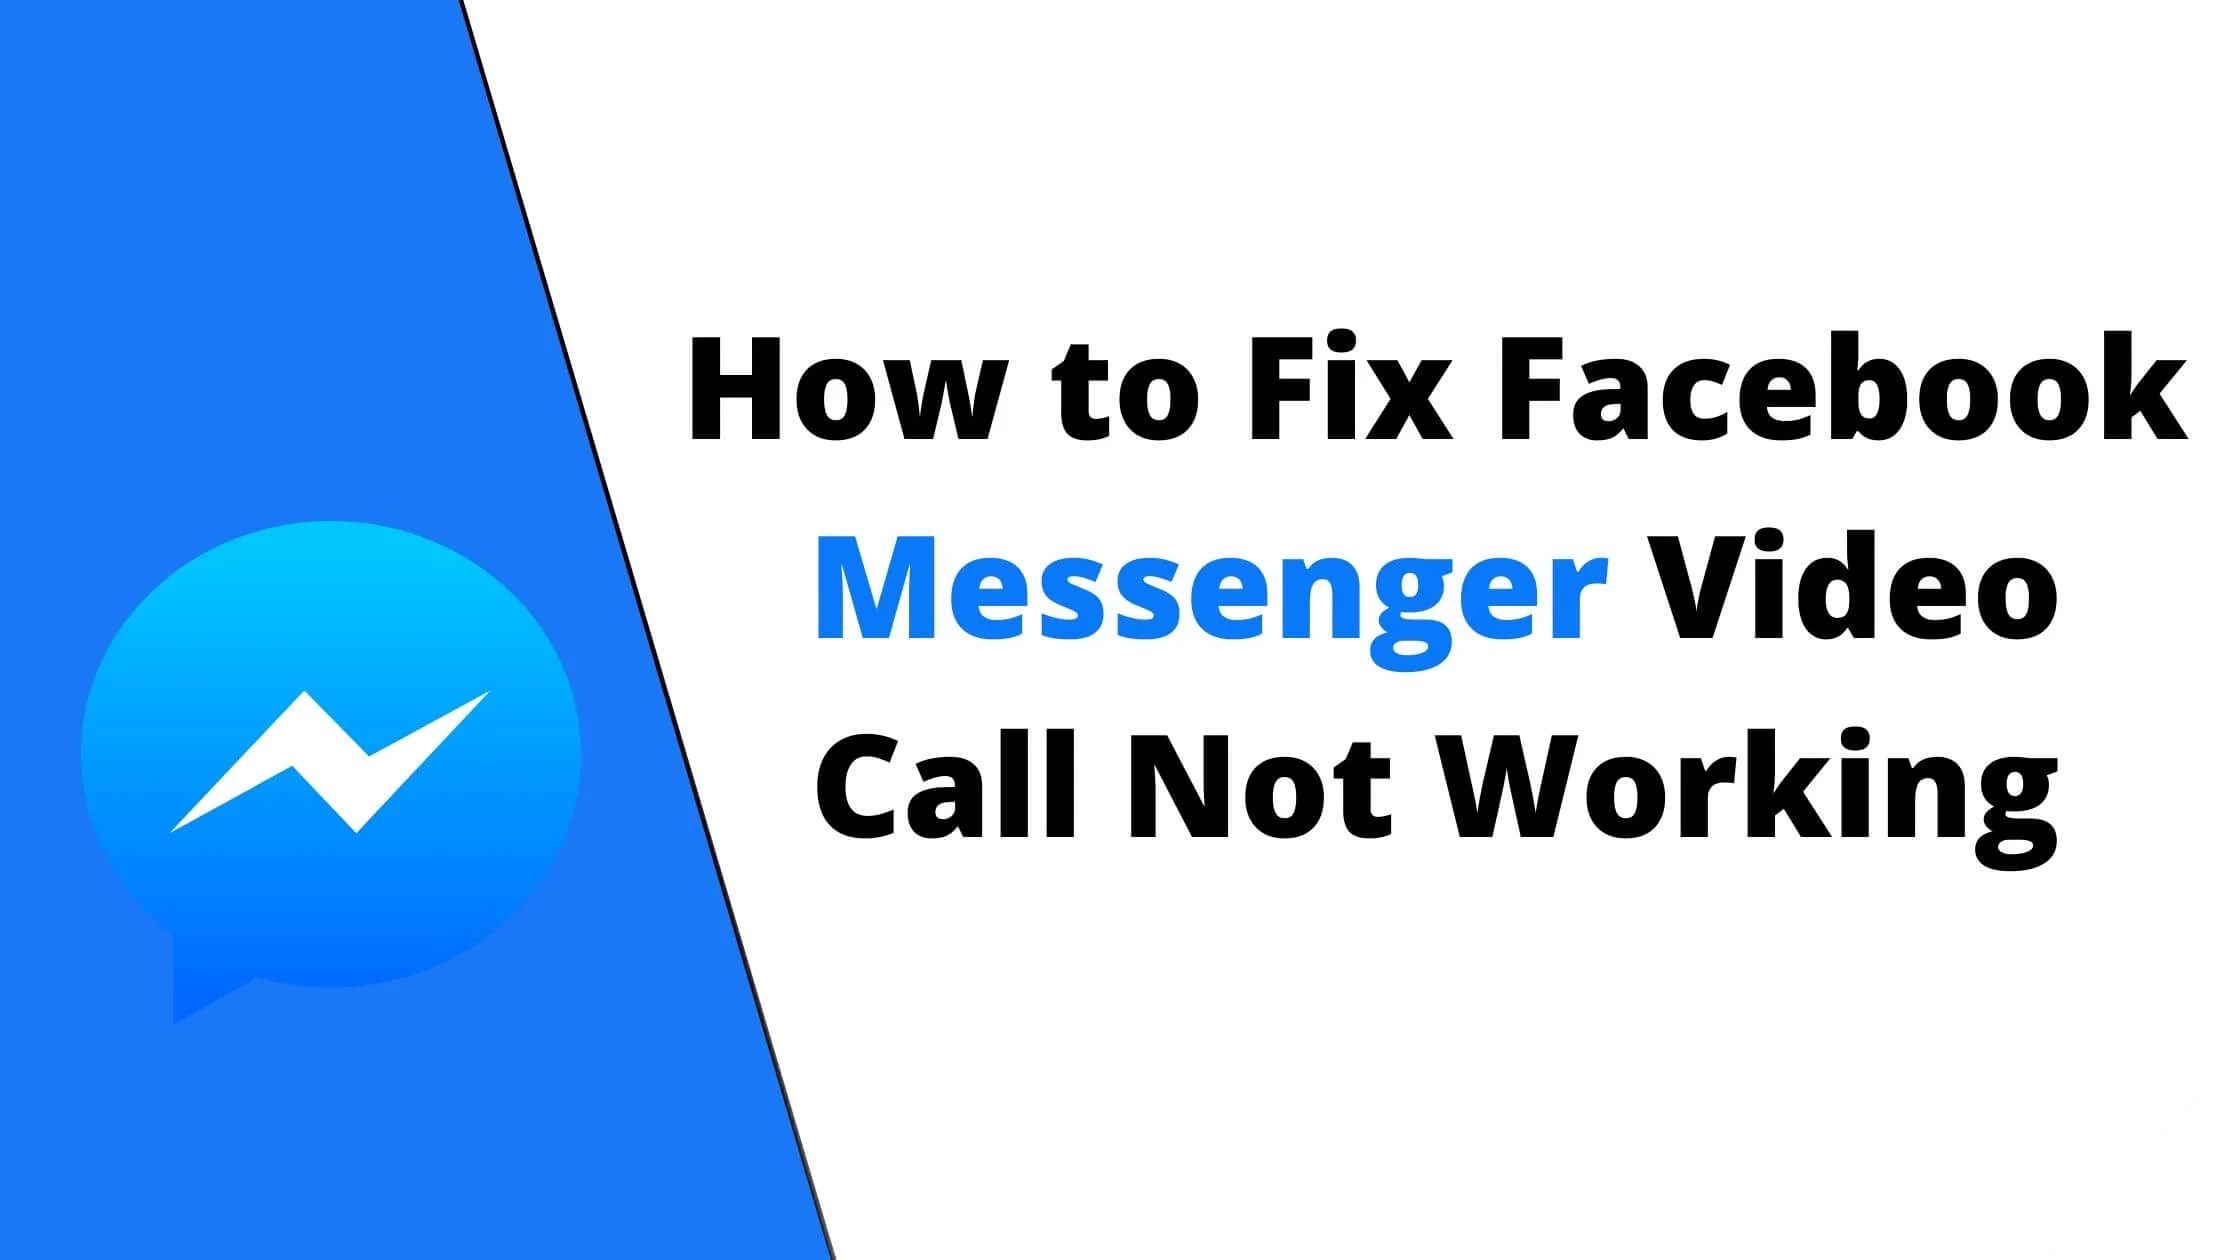 Facebook Messenger Video Call Not Working